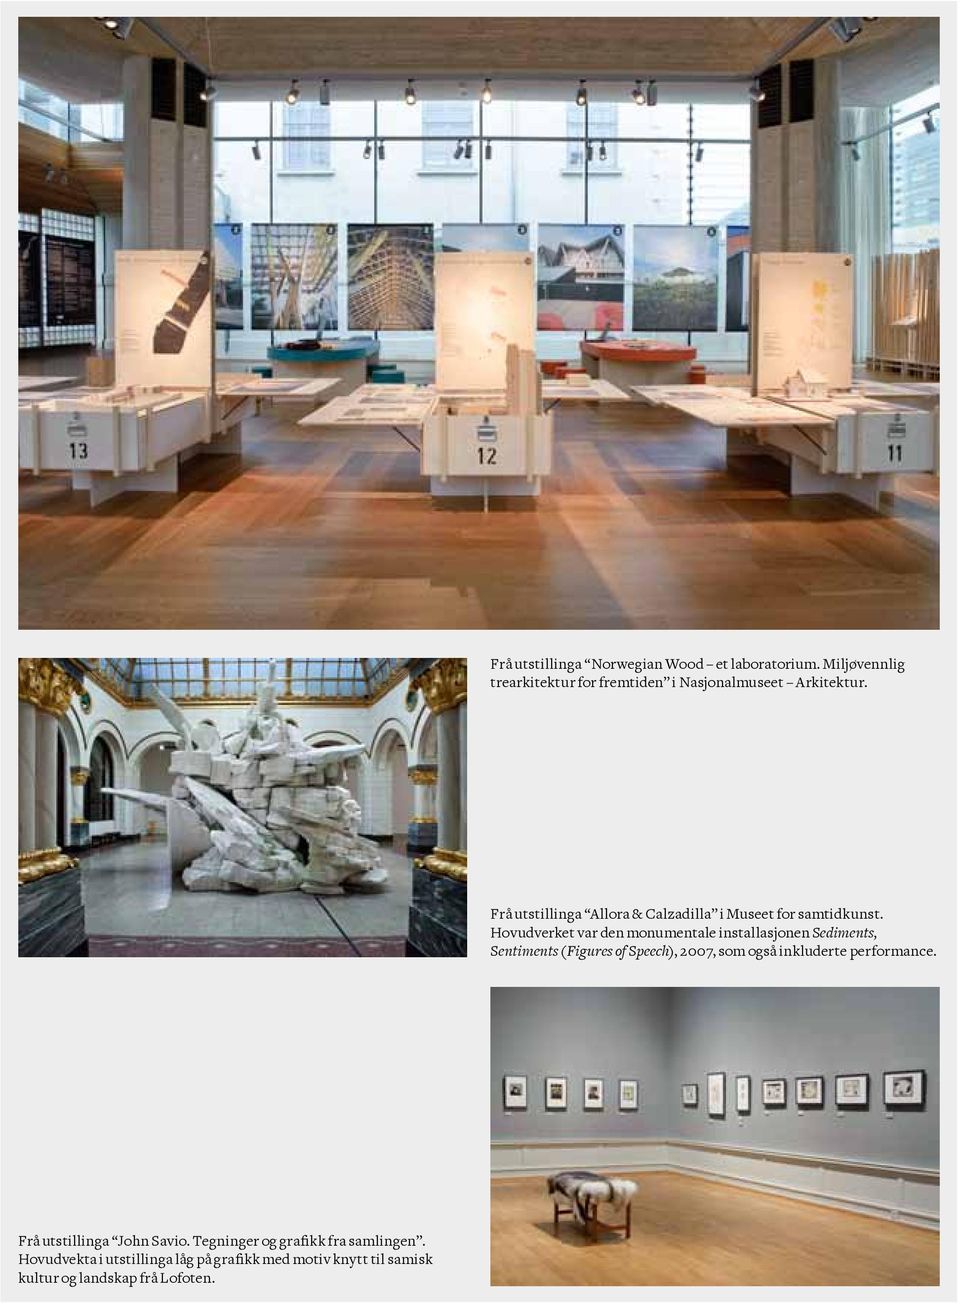 Hovudverket var den monumentale installasjonen Sediments, Sentiments (Figures of Speech), 2007, som også inkluderte